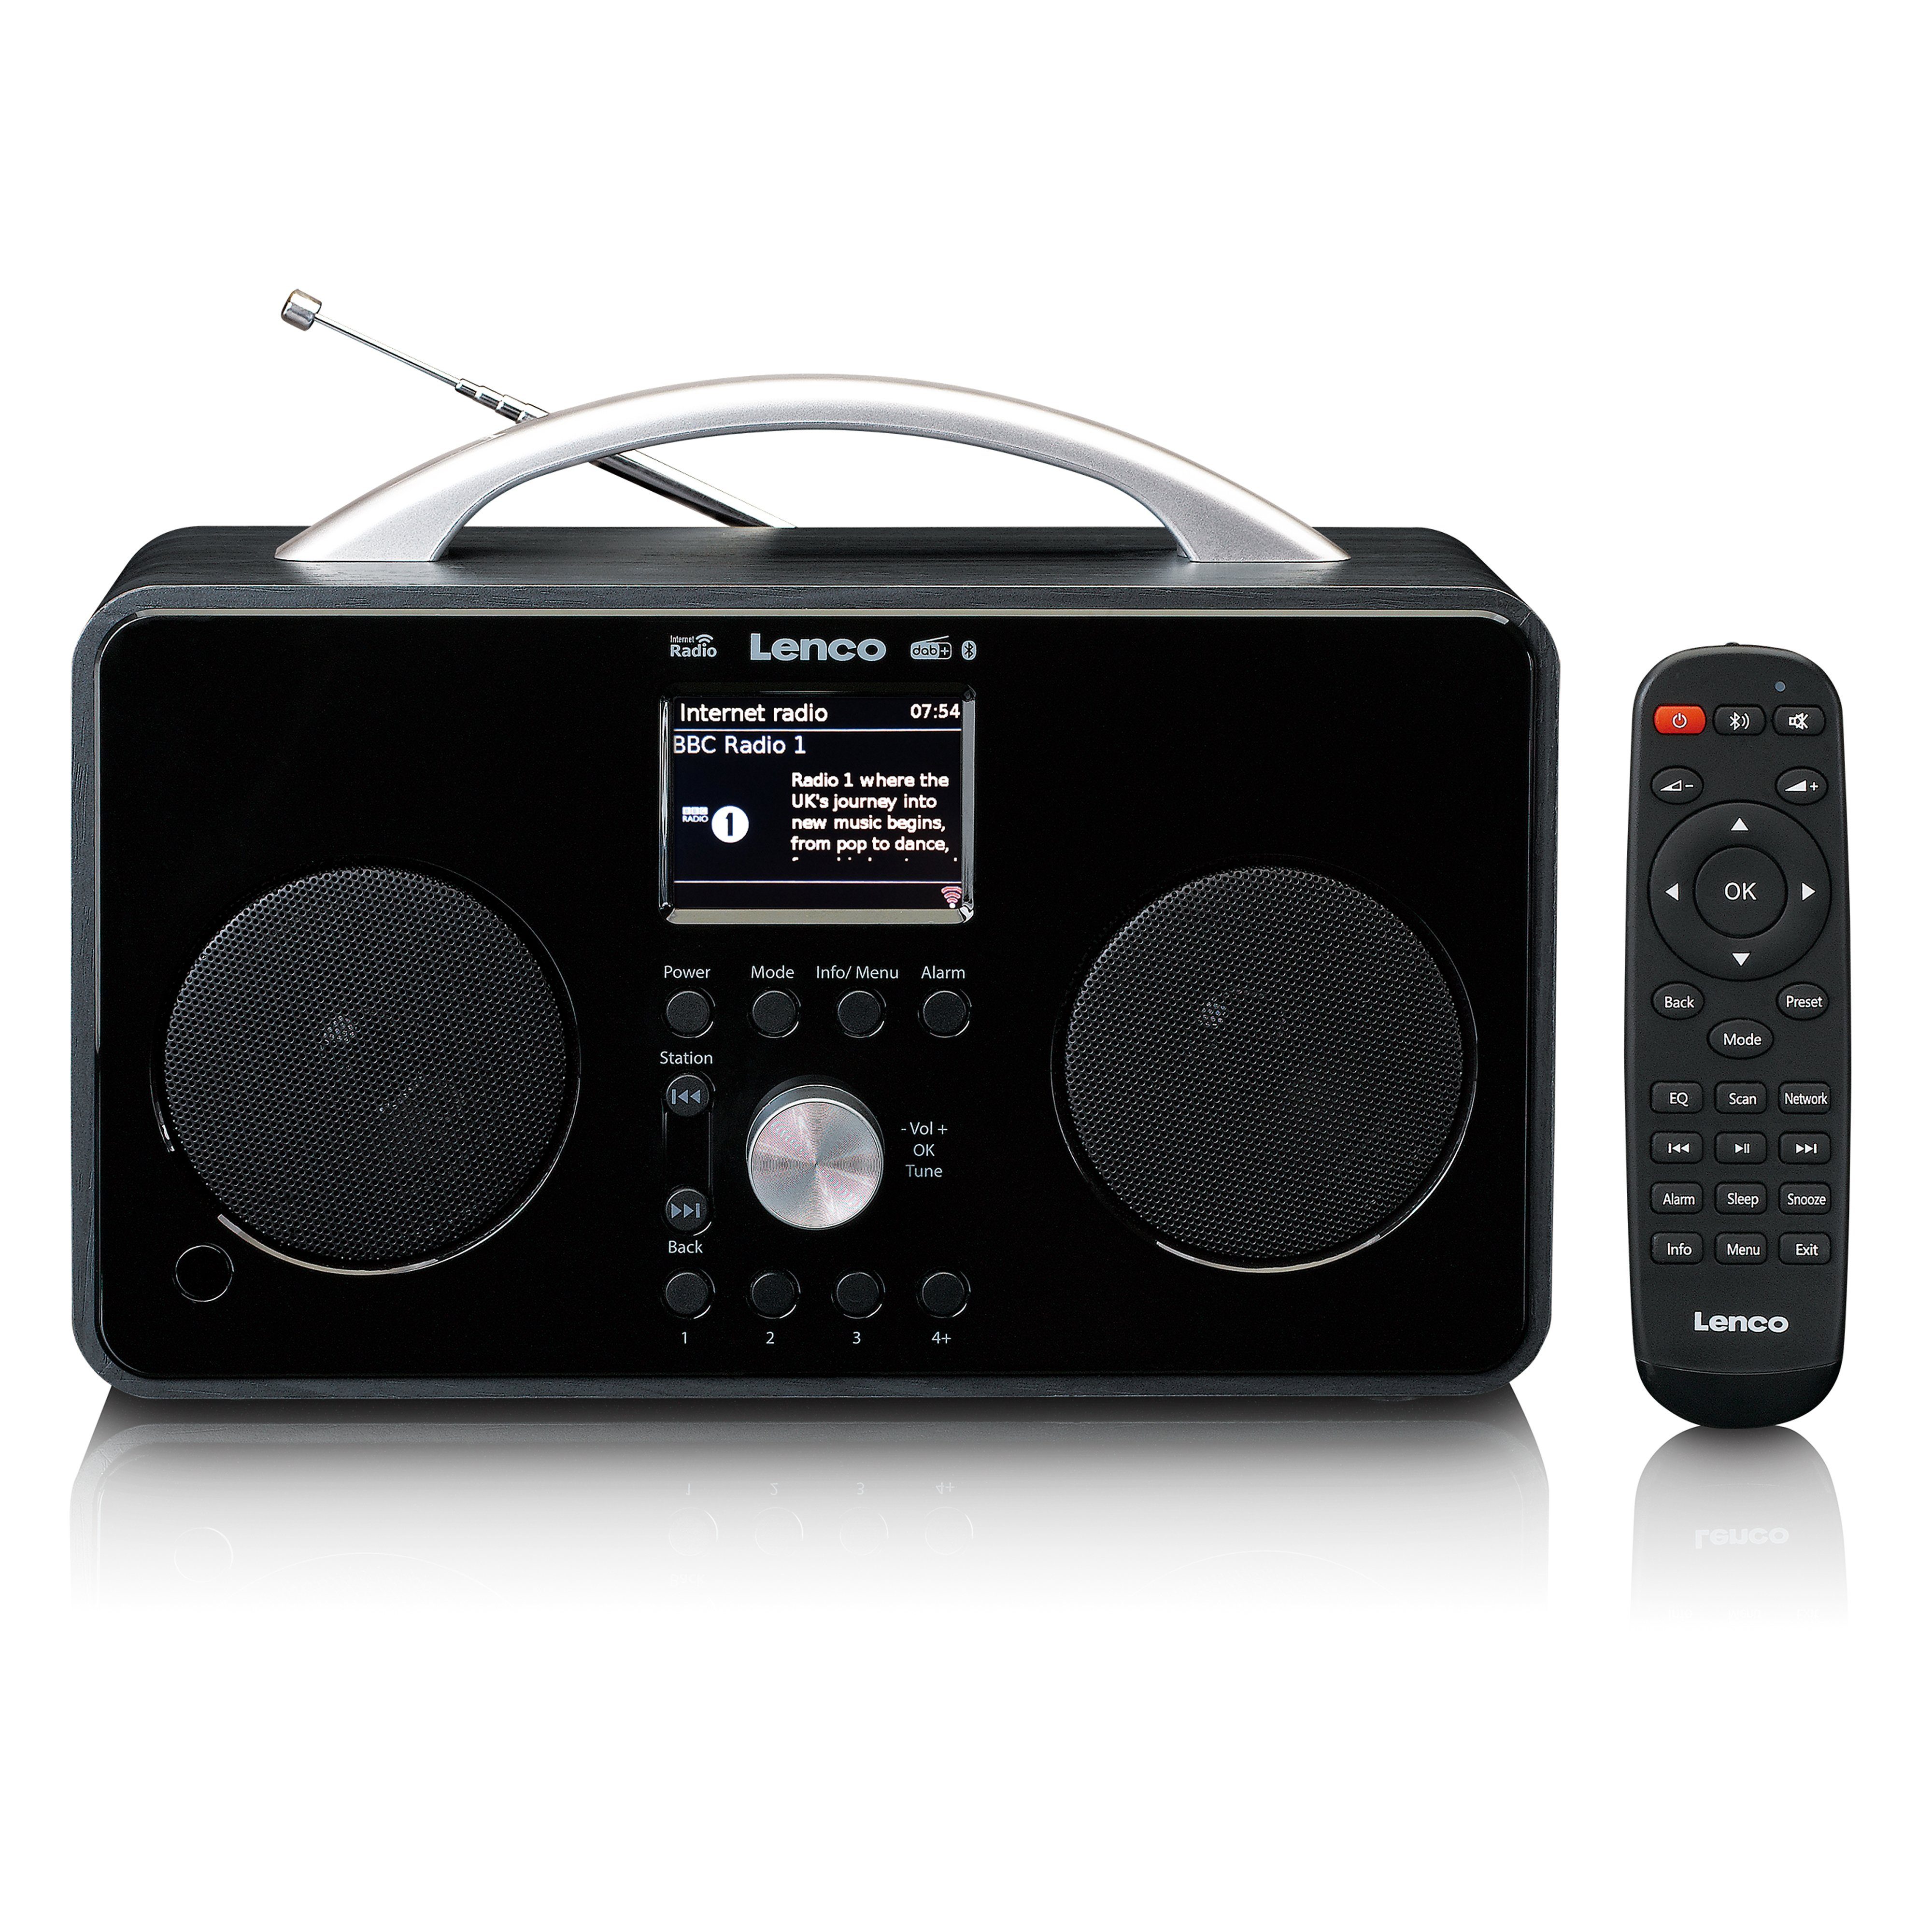 Lenco PIR-645 Internet-Radio (Digitalradio (DAB), PLL FM Radio, 5,00 W, Bluetooth) Schwarz-Silber